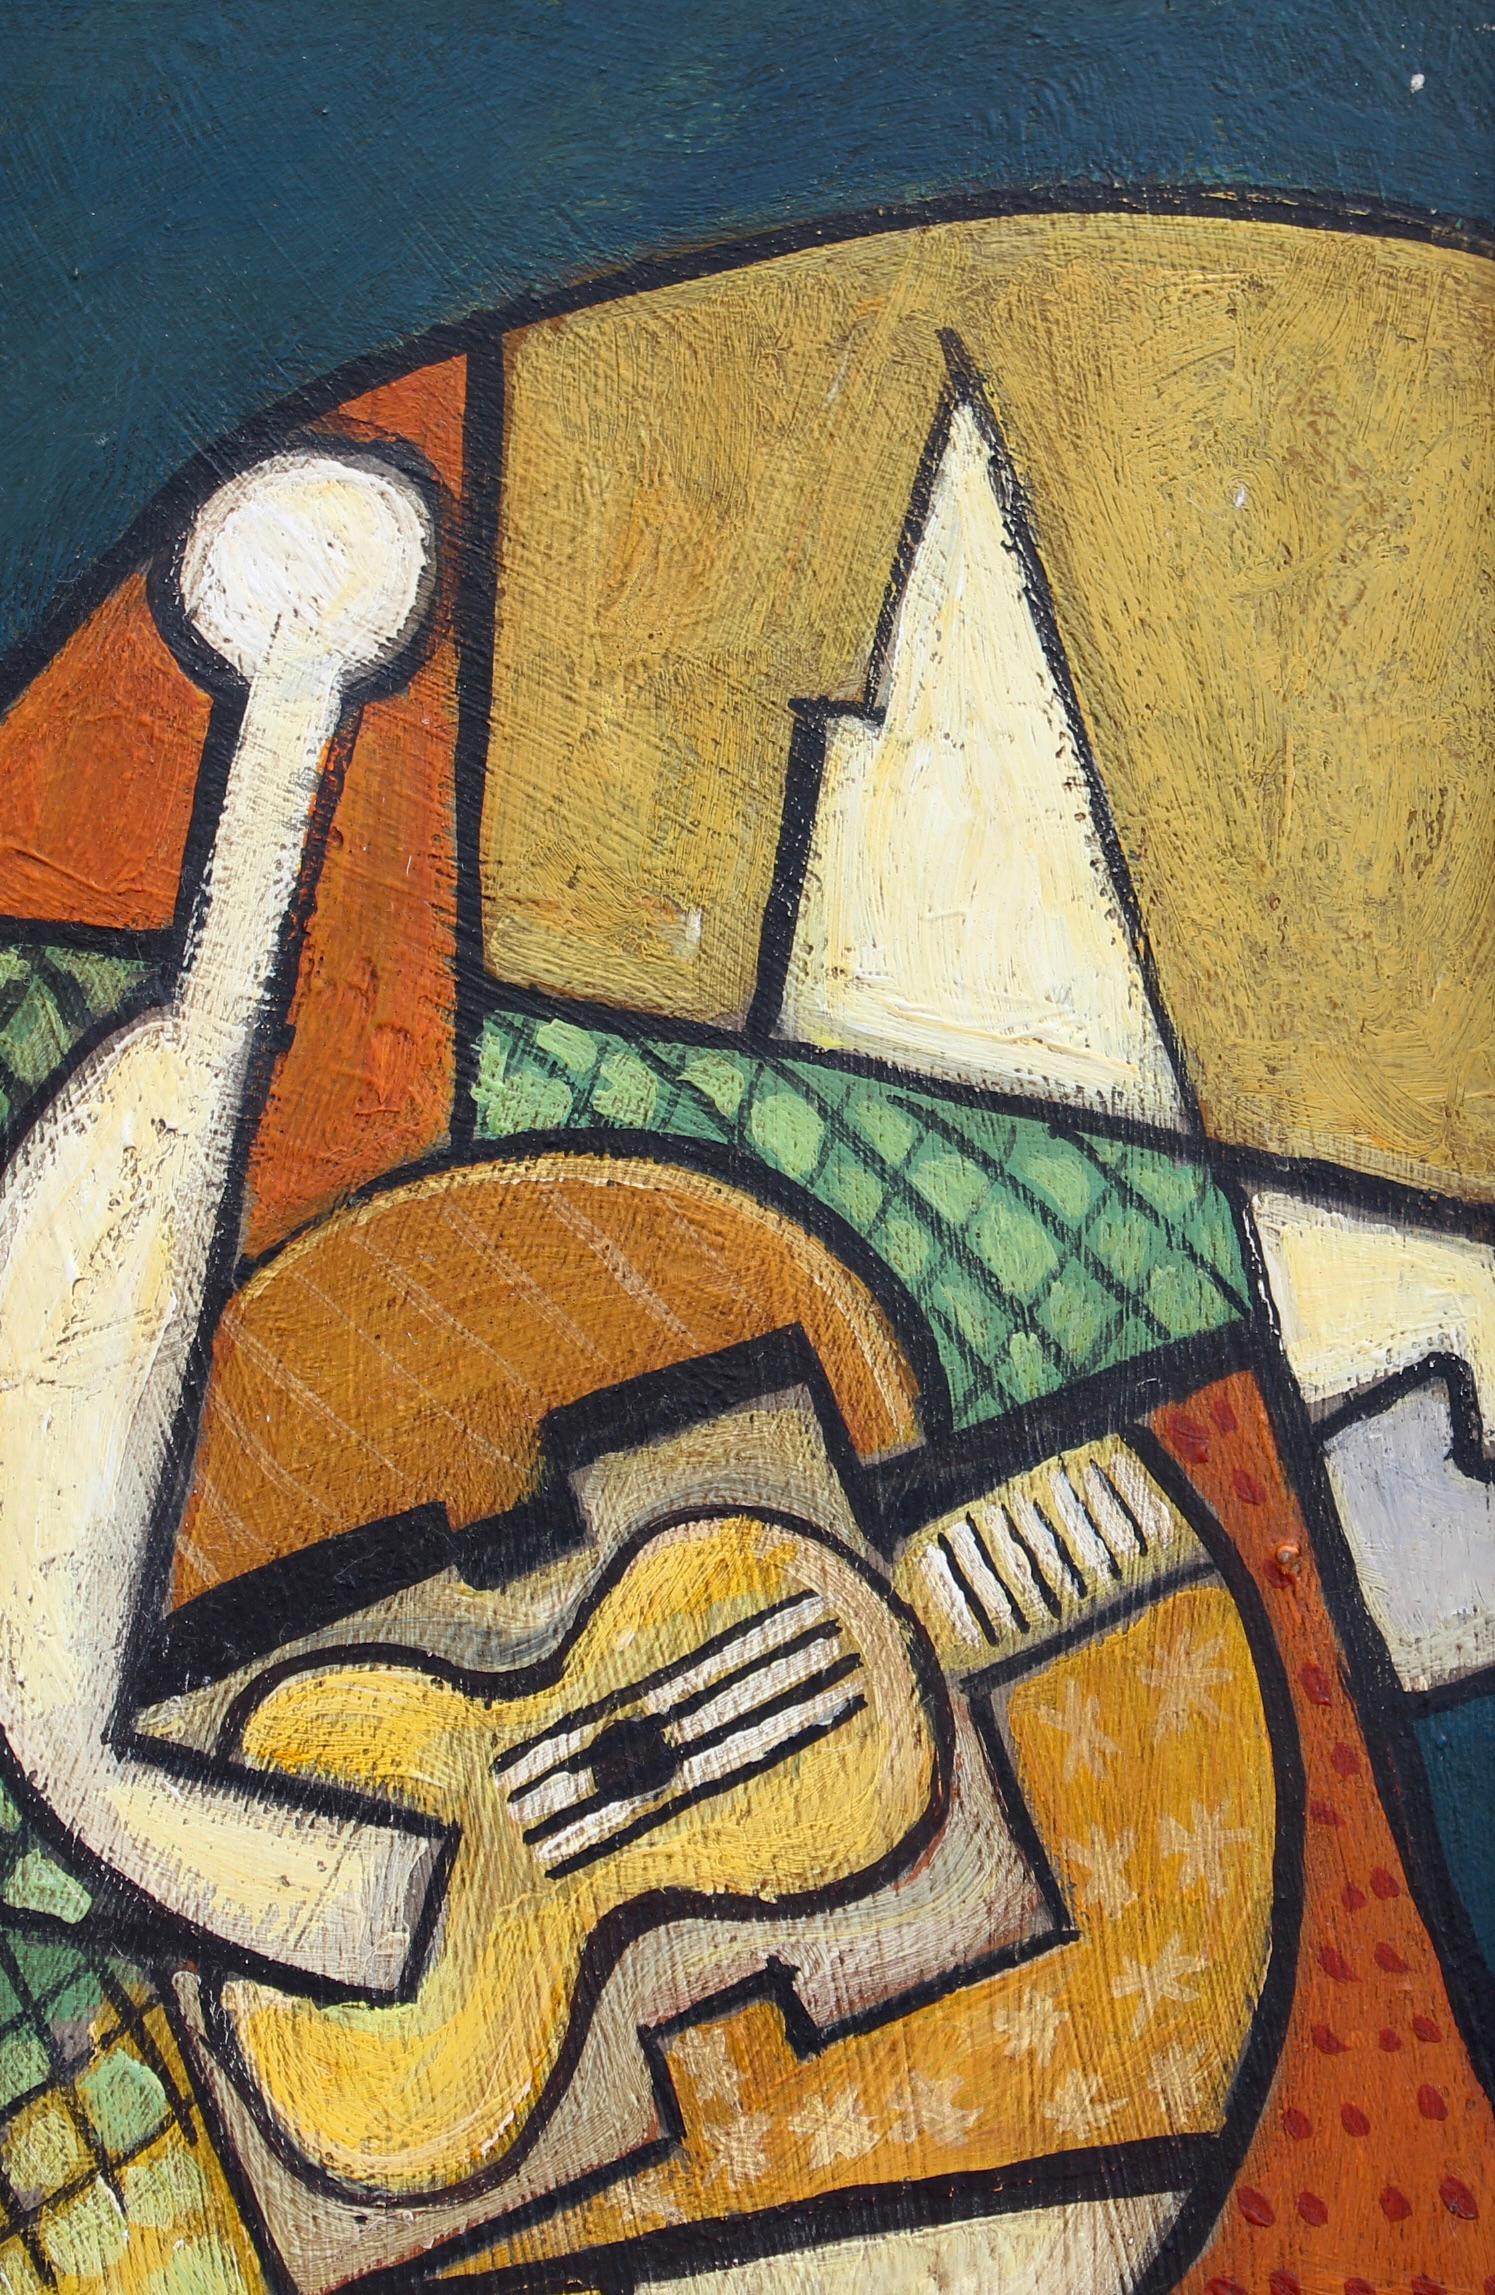 Porträt eines Gitarre spielenden Mannes, Öl auf Karton, Berliner Schule (ca. 1960er Jahre). Dieses Gemälde ist eindeutig von den Werken von Georges Braque (1882-1963) und Juan Gris (1887-1927) inspiriert und ähnelt den experimentellen Darstellungen